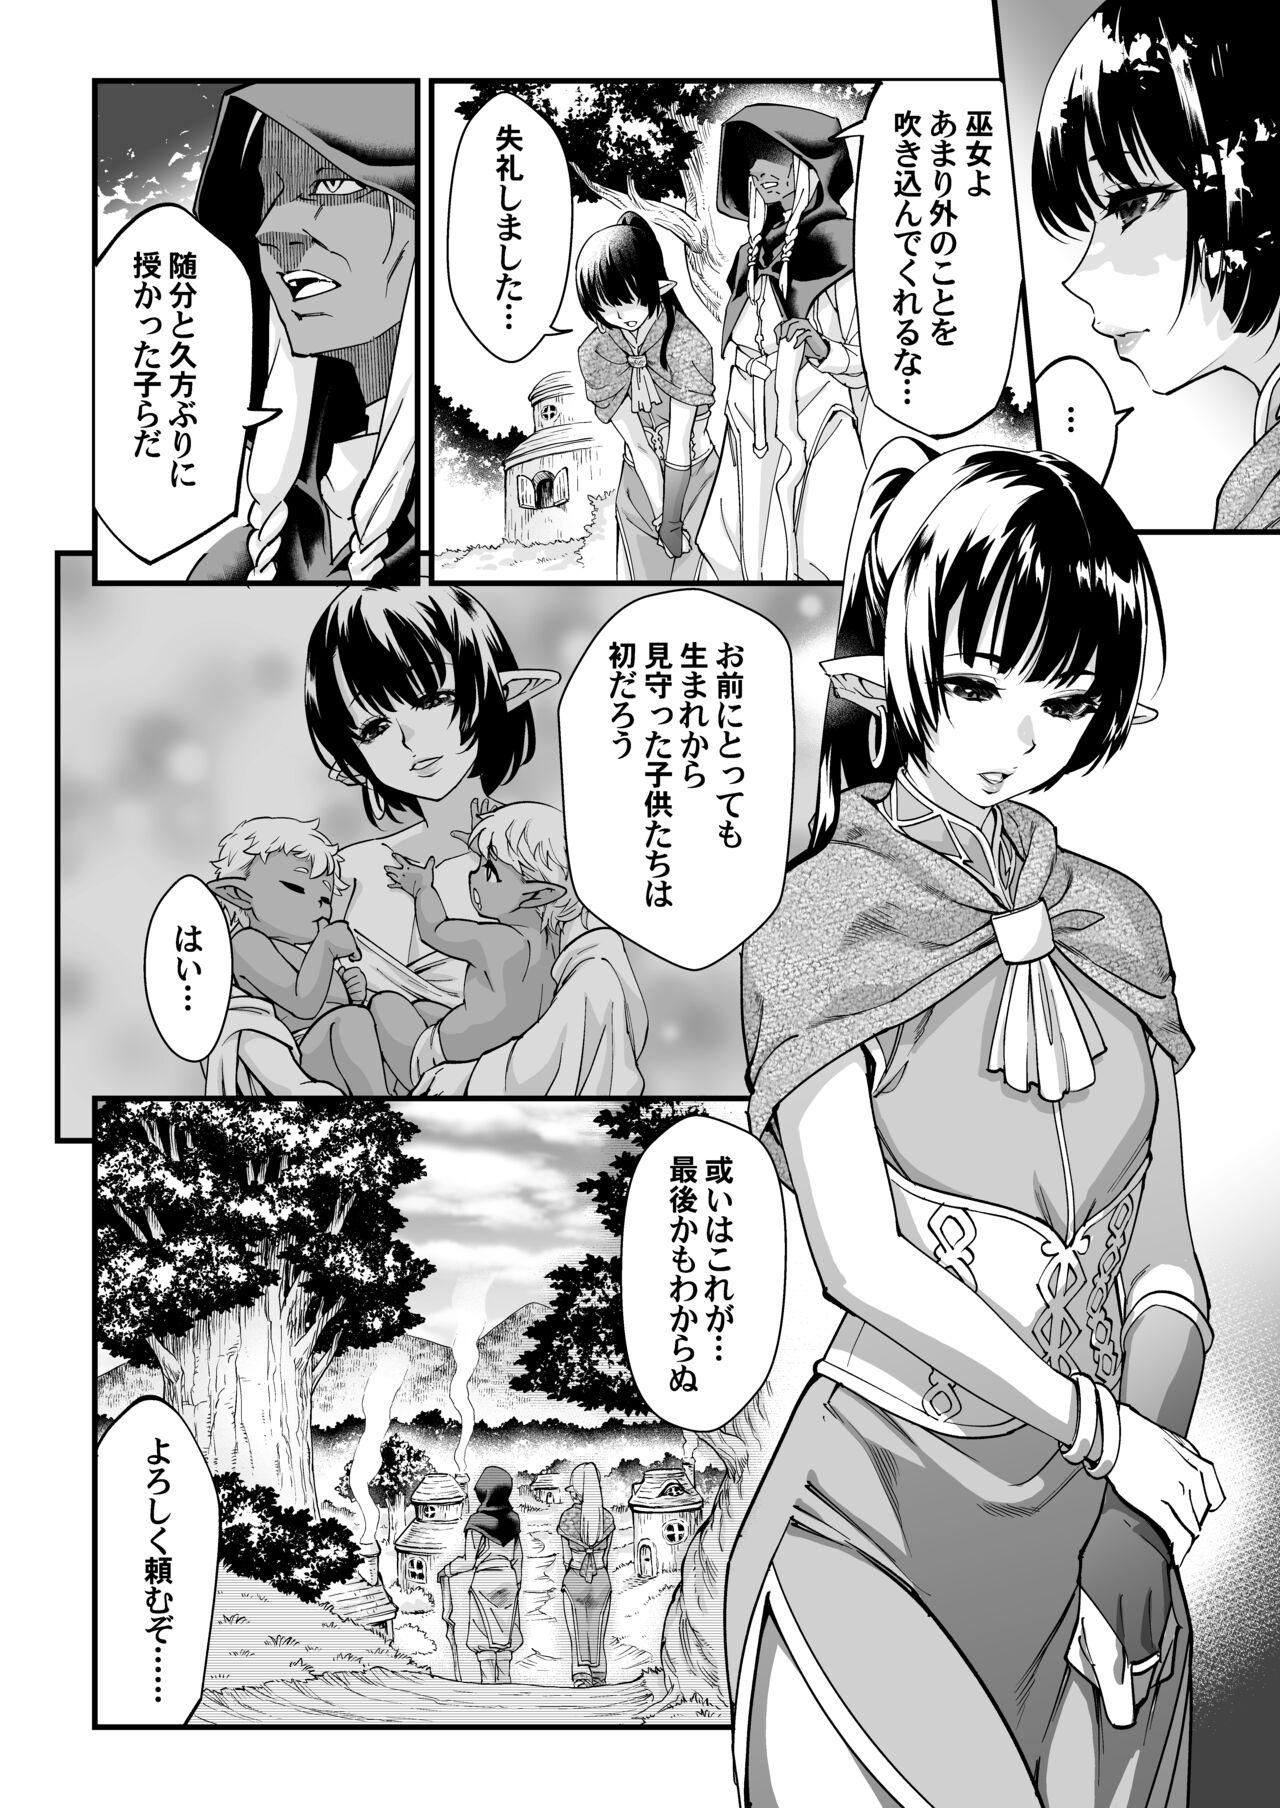 Bubblebutt Kuroi mori no o hanashi - Original Desperate - Page 8